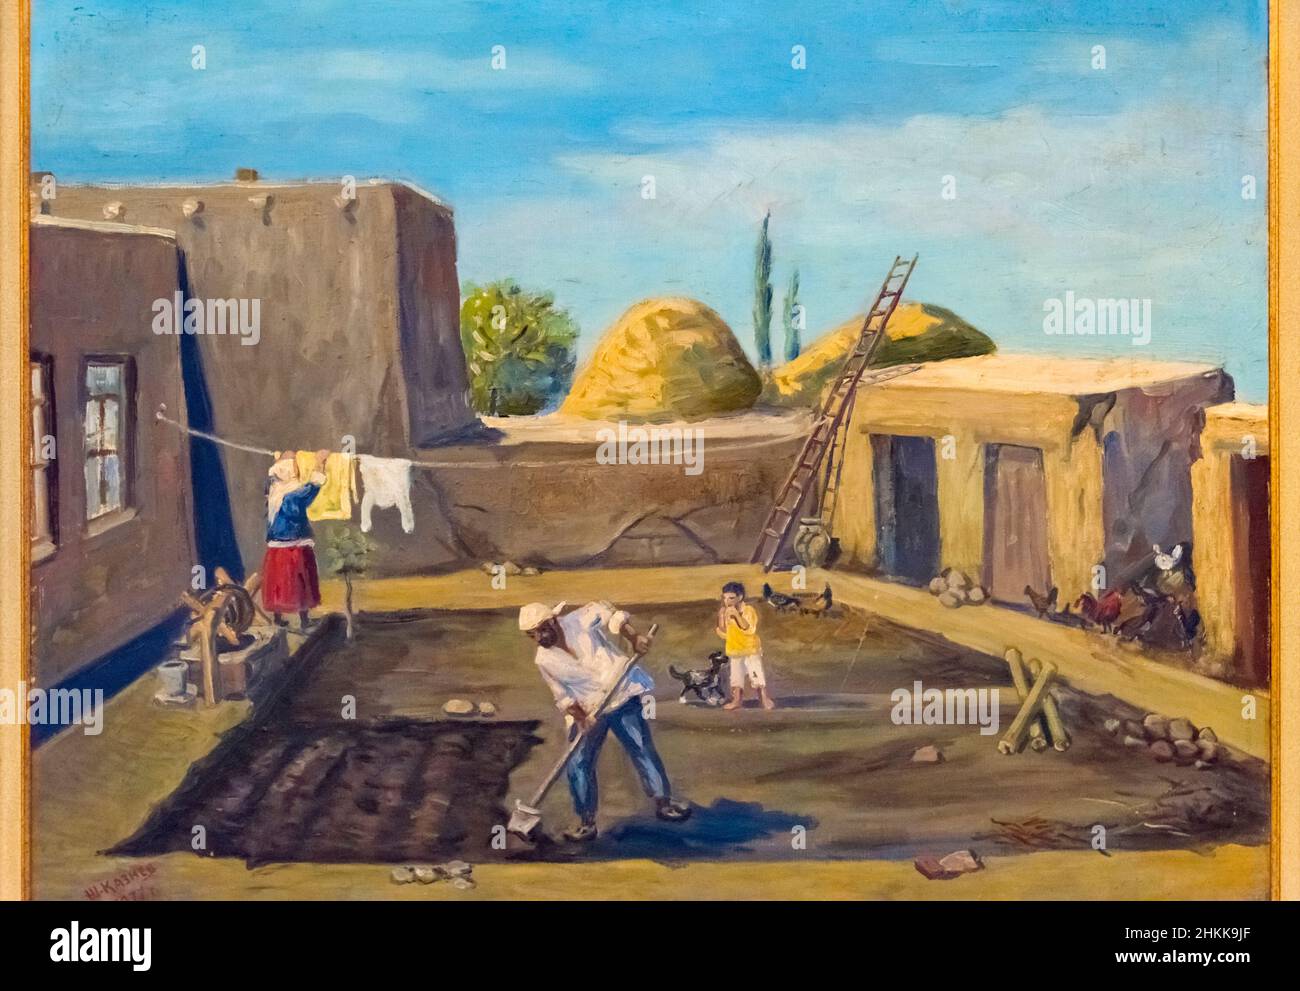 Gemälde, das das Leben der Menschen im Ethnographischen Museum, Nakhchivan, Autonome Republik Nakhchivan, einer Exklave von Aserbaidschan, darstellt Stockfoto